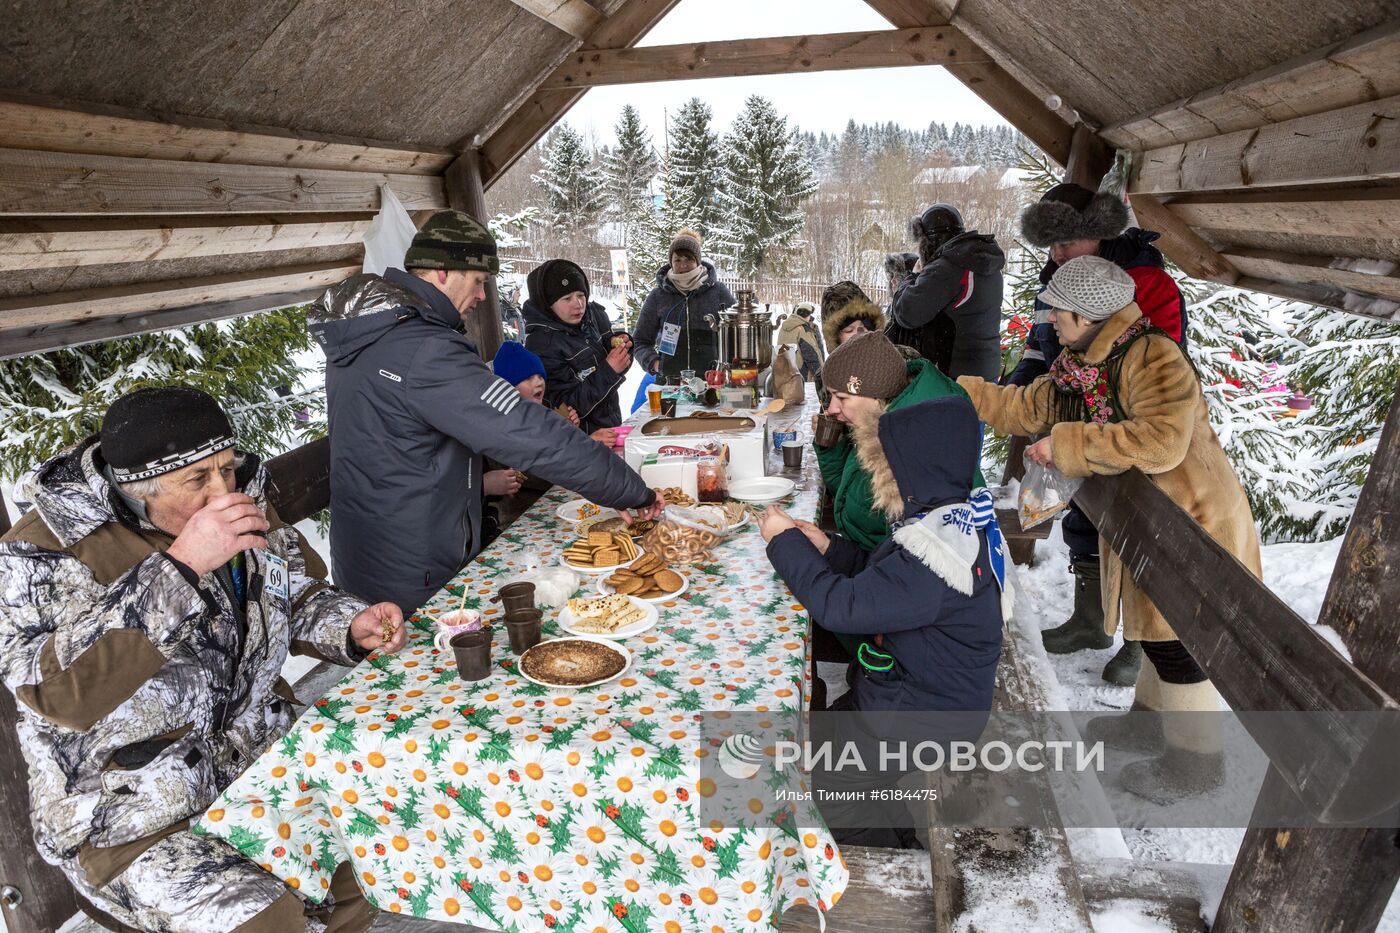 Фестиваль подледного лова рыбы "Пудожские налимы" в Карелии